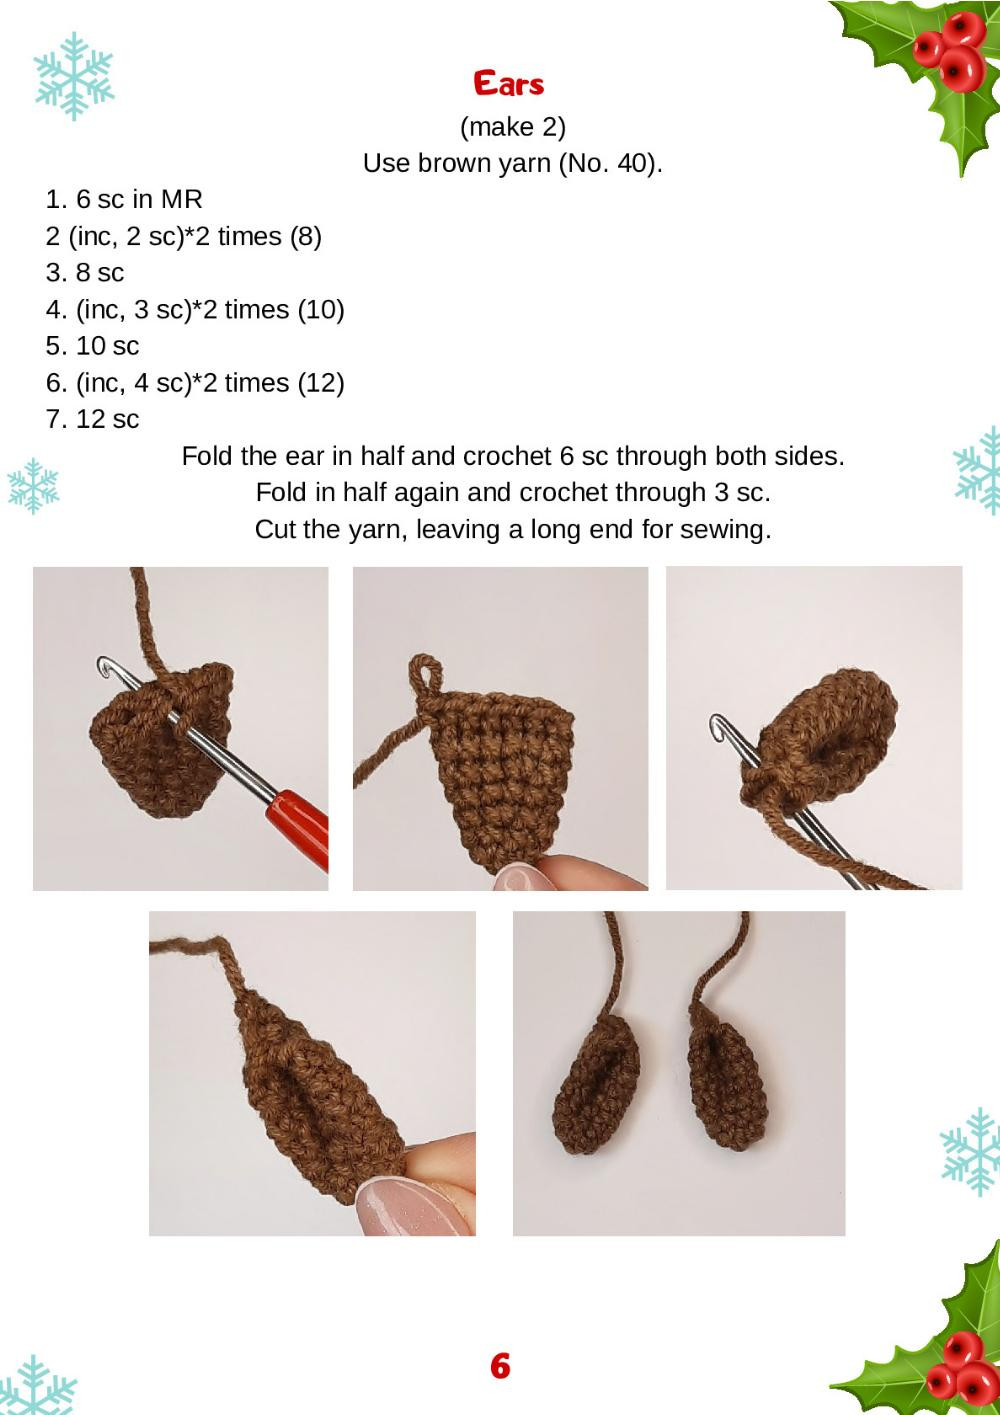 Reindeer Planter Pot crochet pattern